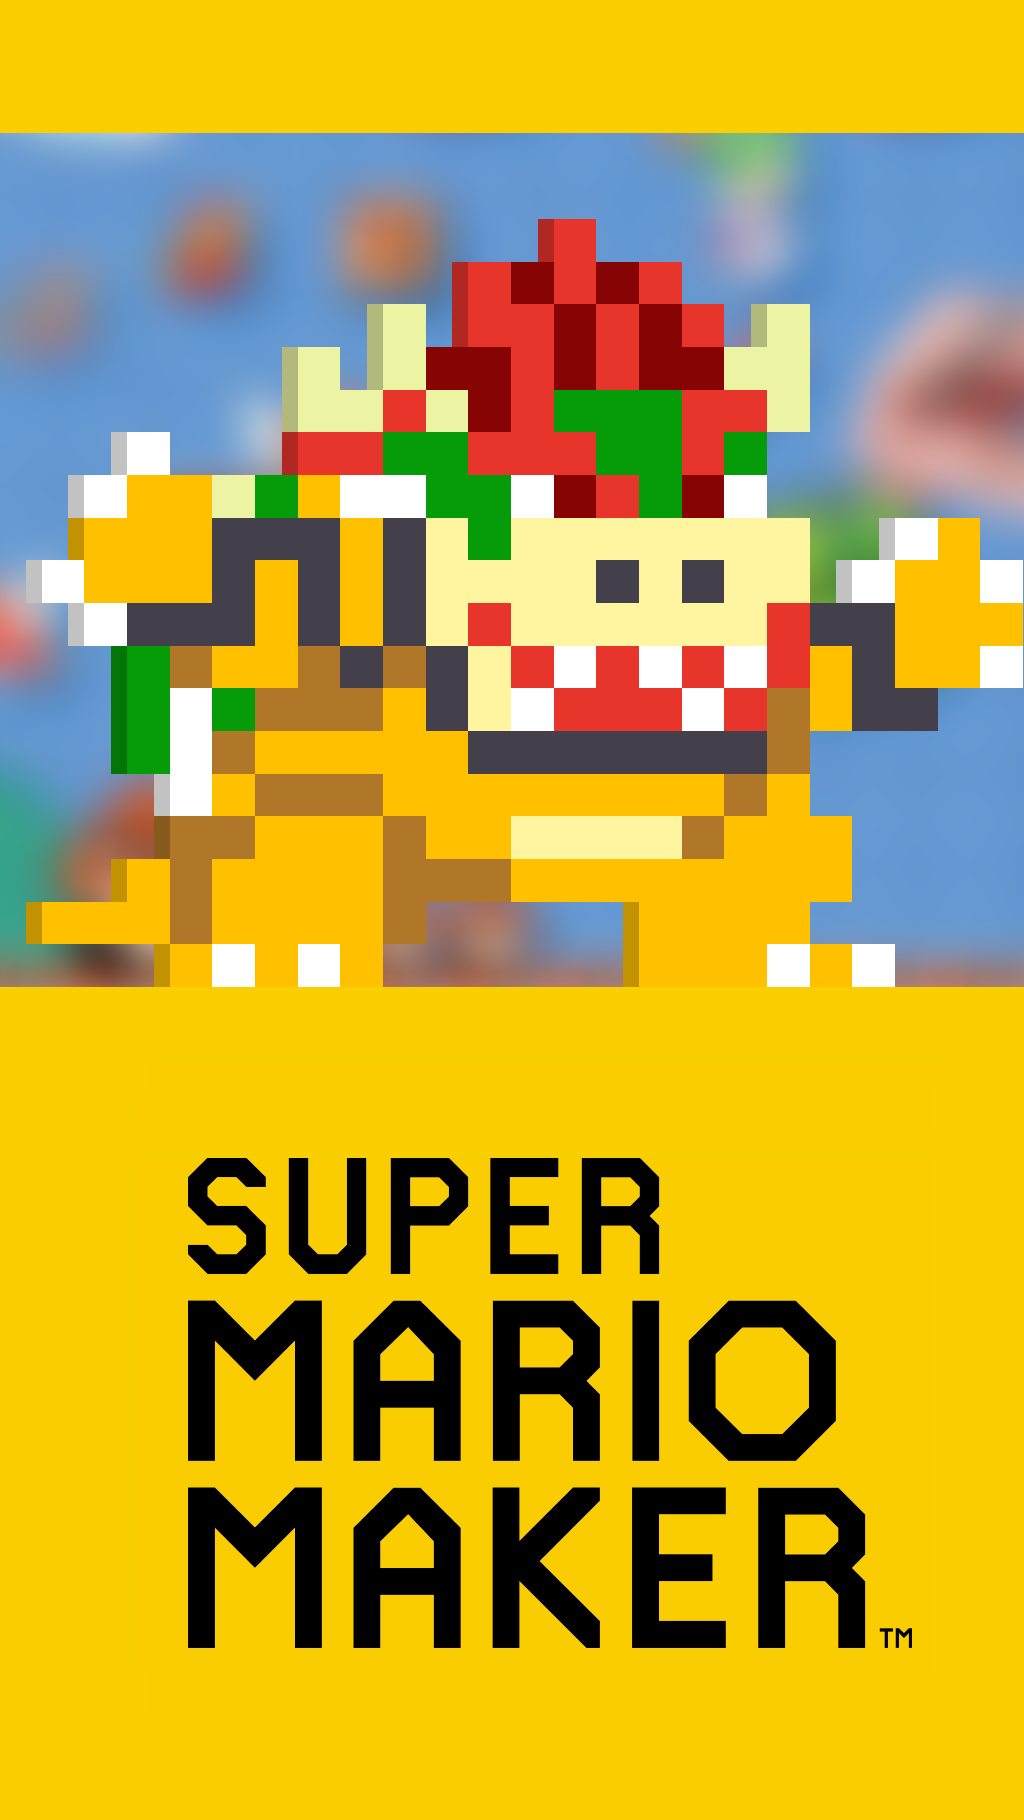 Mario Phone Wallpaper - Super Mario Maker Wallpaper Iphone - 1024x1820  Wallpaper 